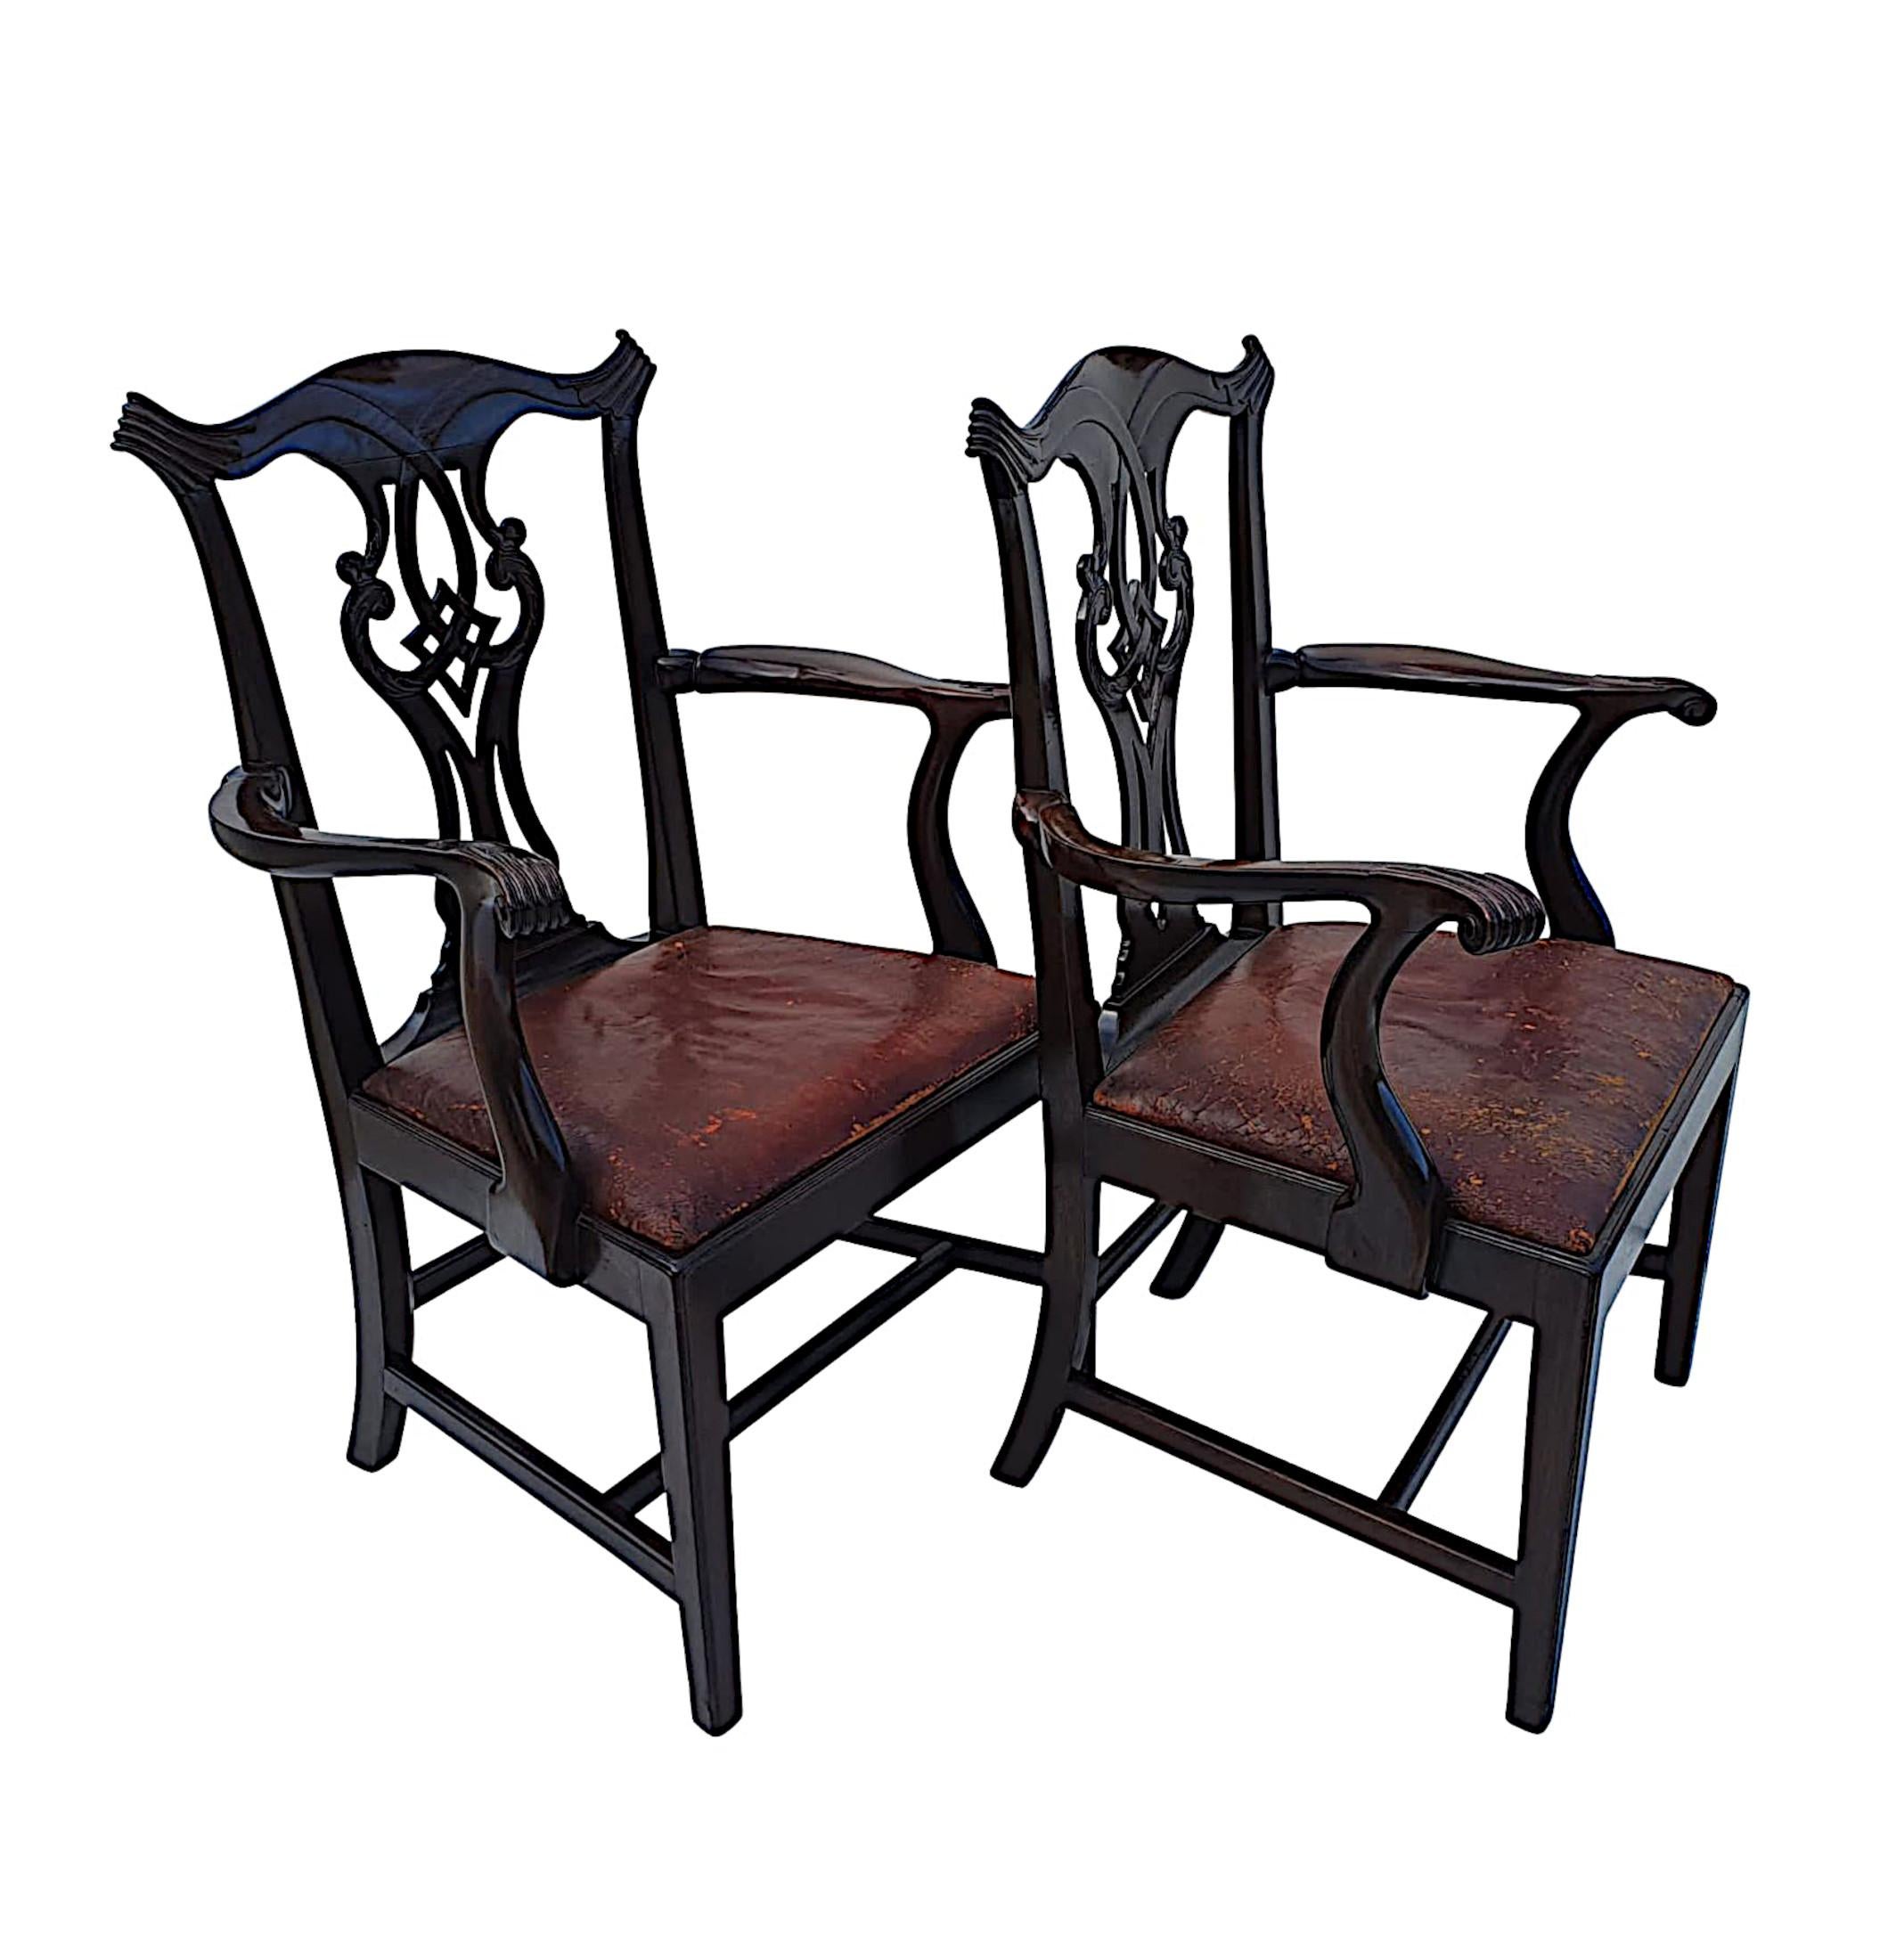 Ein atemberaubendes Paar offener Mahagoni-Sessel im georgianischen Design des 19. Jahrhunderts in der Art von Chippendale. Atemberaubende Hand geschnitzt mit einer schönen Patina, die Bogen-förmigen oberen Schiene mit geriffelten Ecken ist über eine